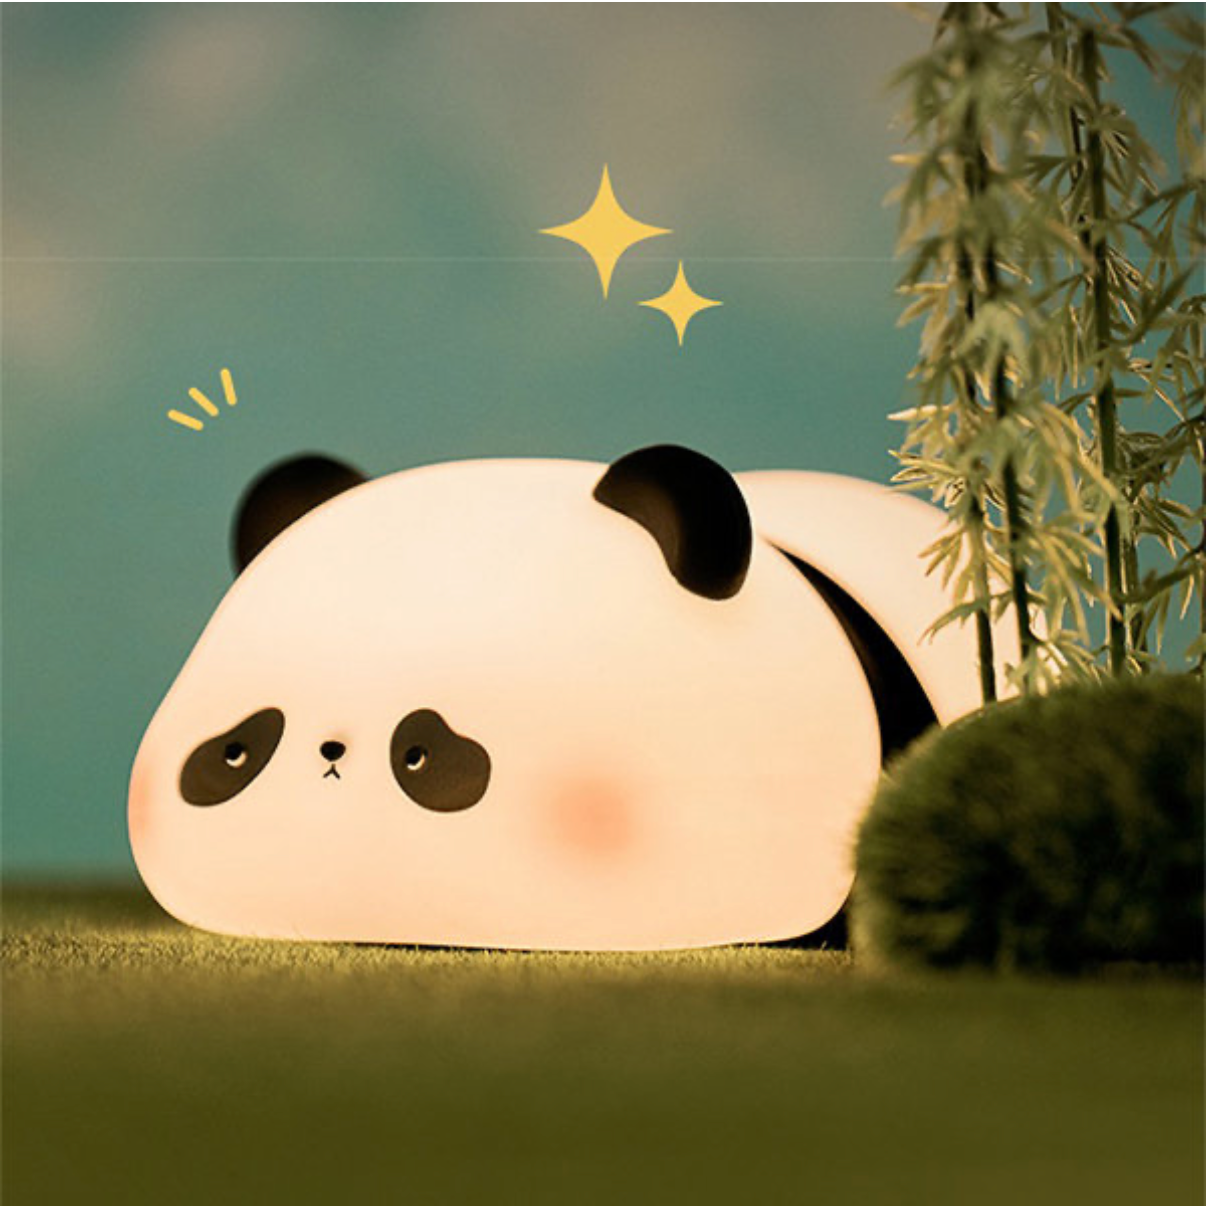 Sleepy The Panda